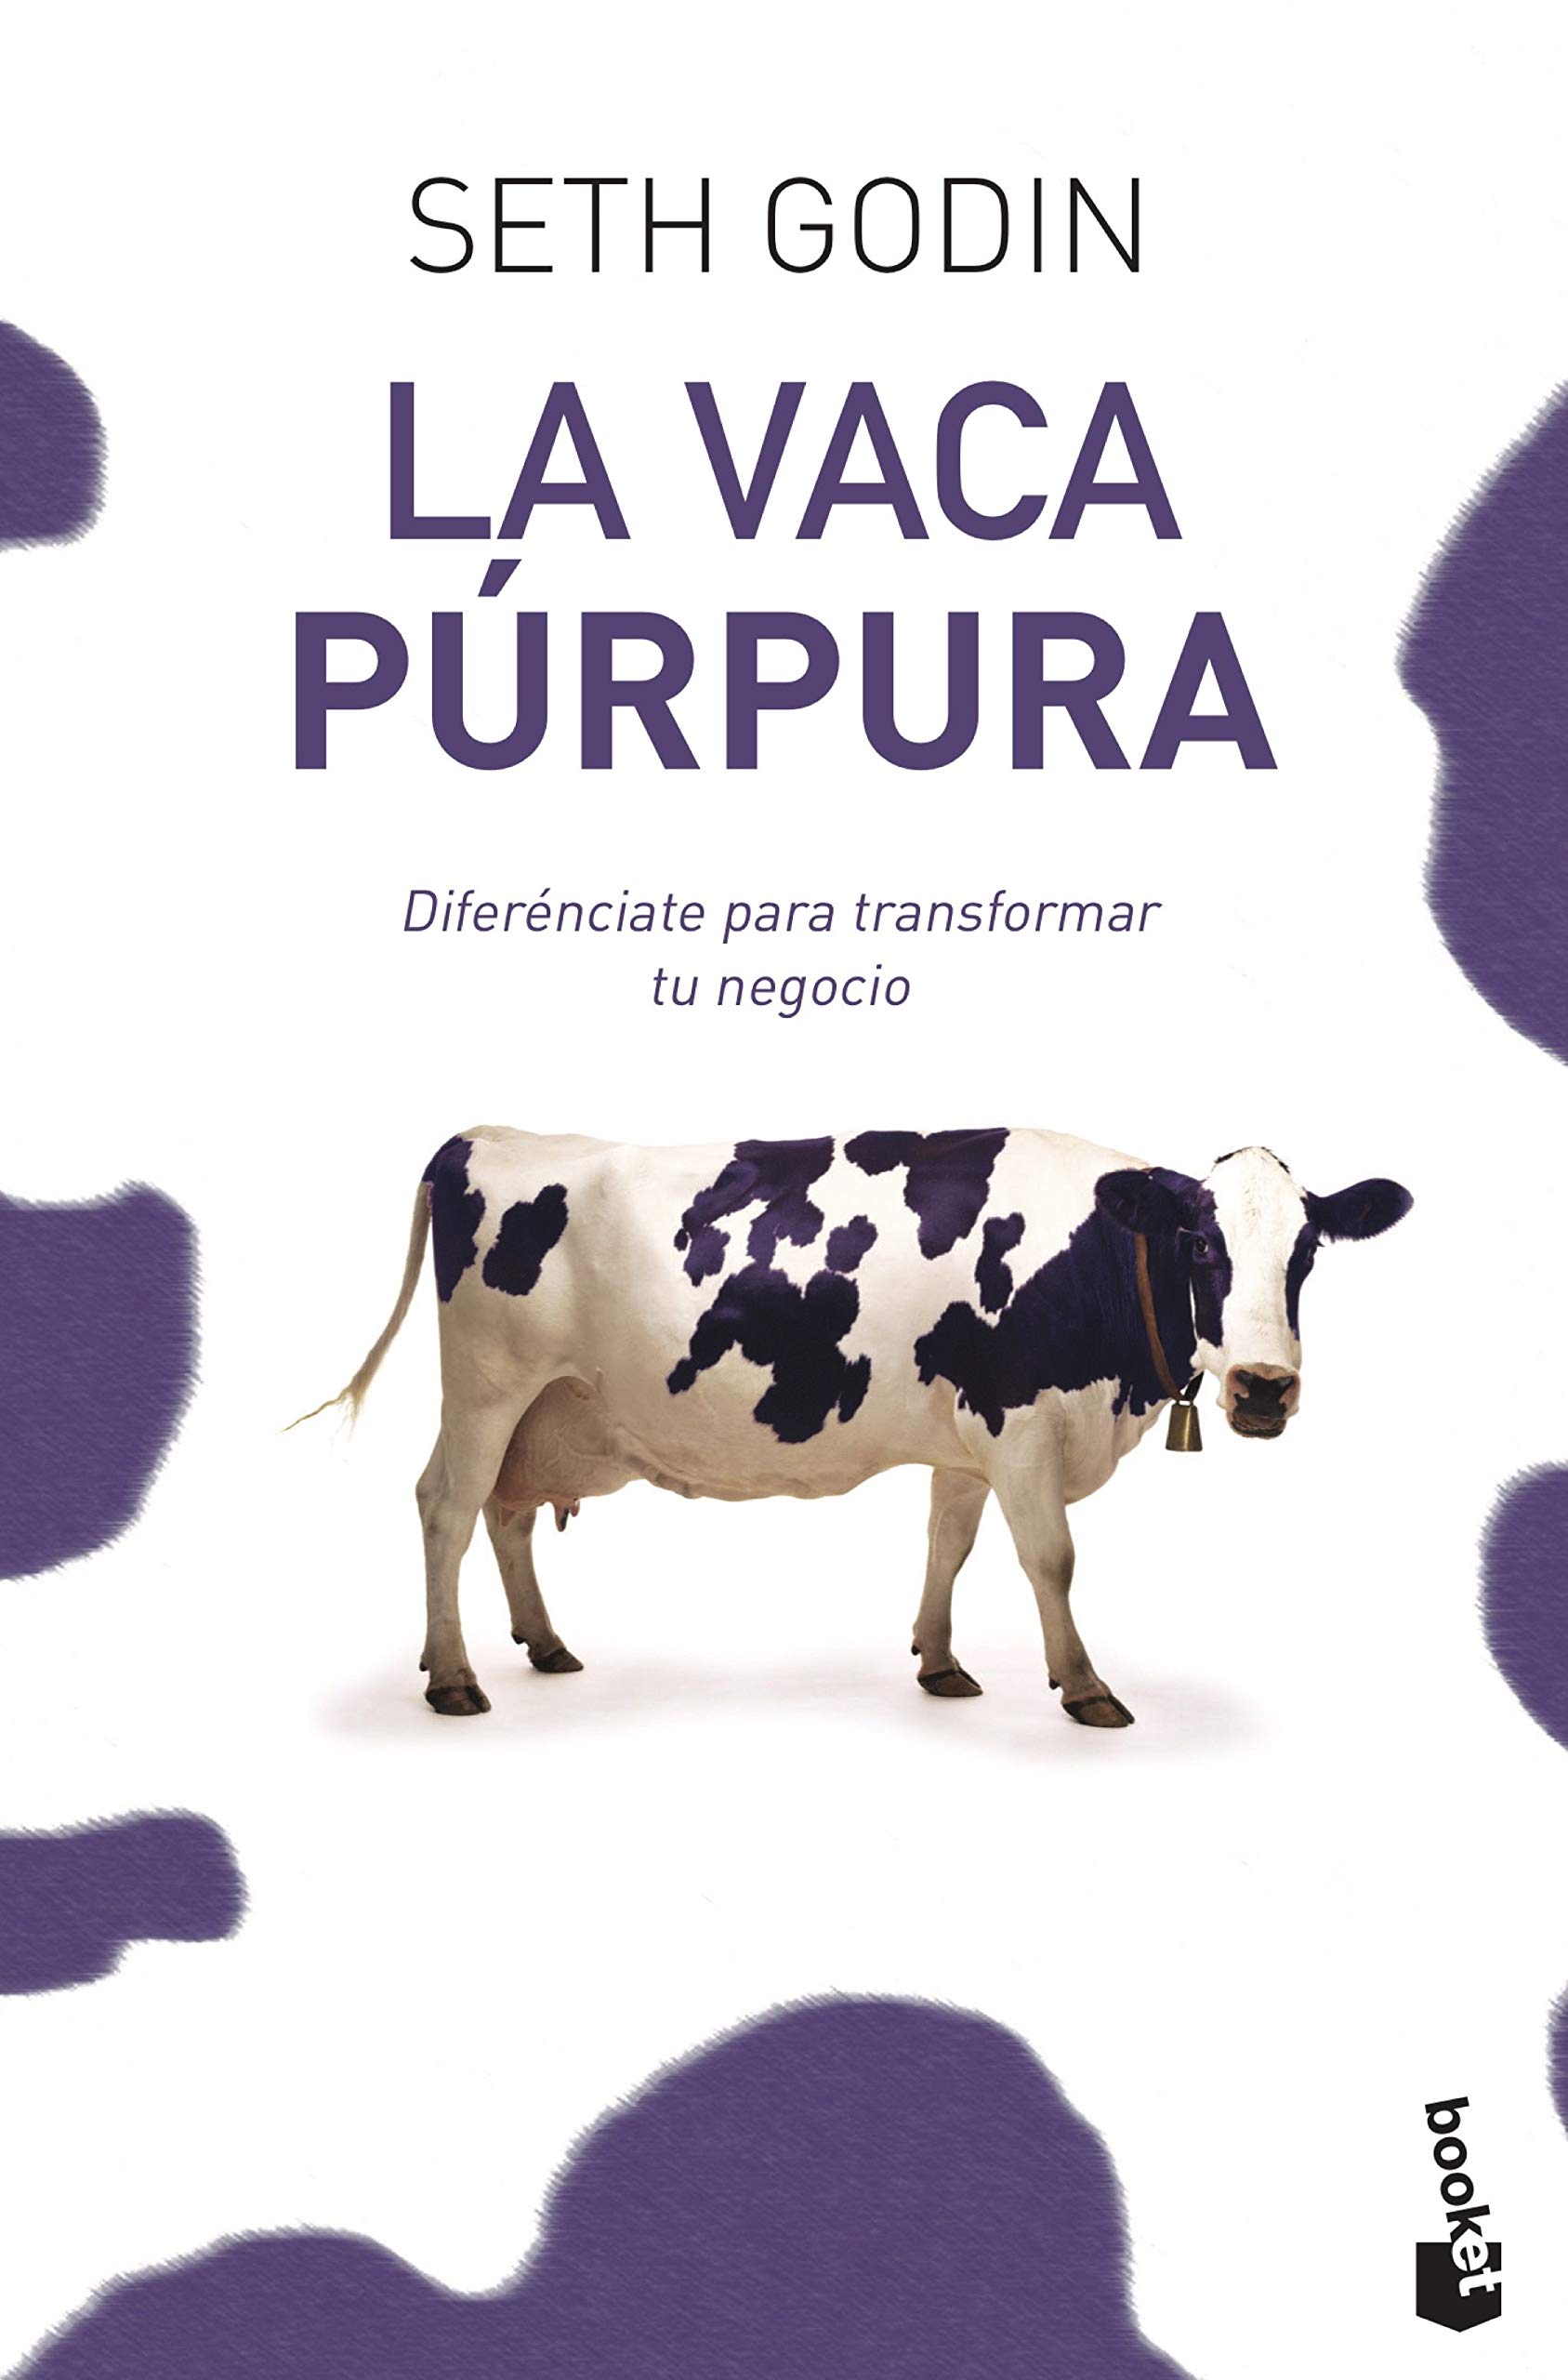 Seth Godin: La vaca Púrpura